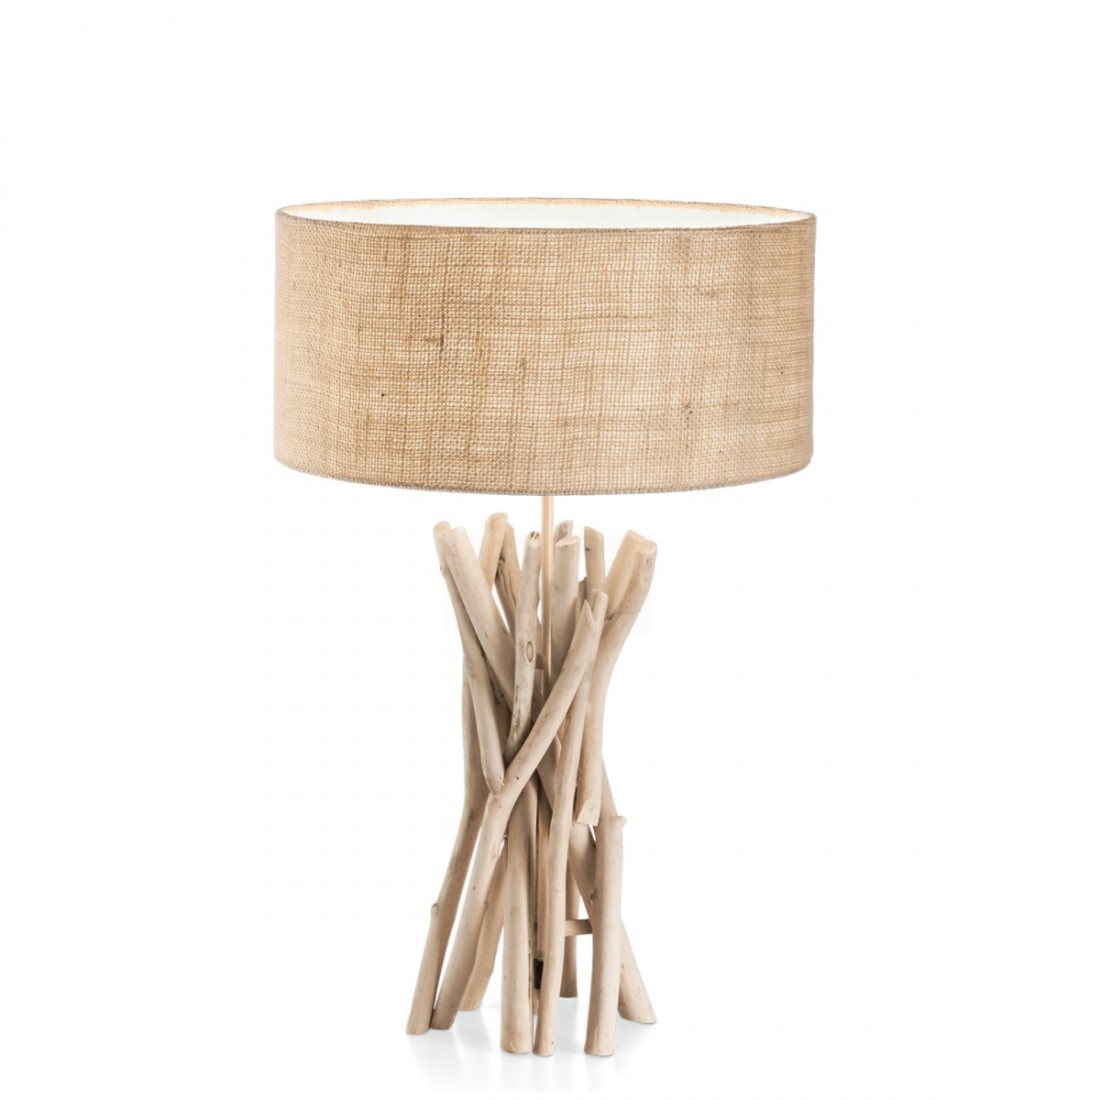 Base per lampada in legno tornito a mano con lampadine decorative E27  vintage, rovere -  Italia